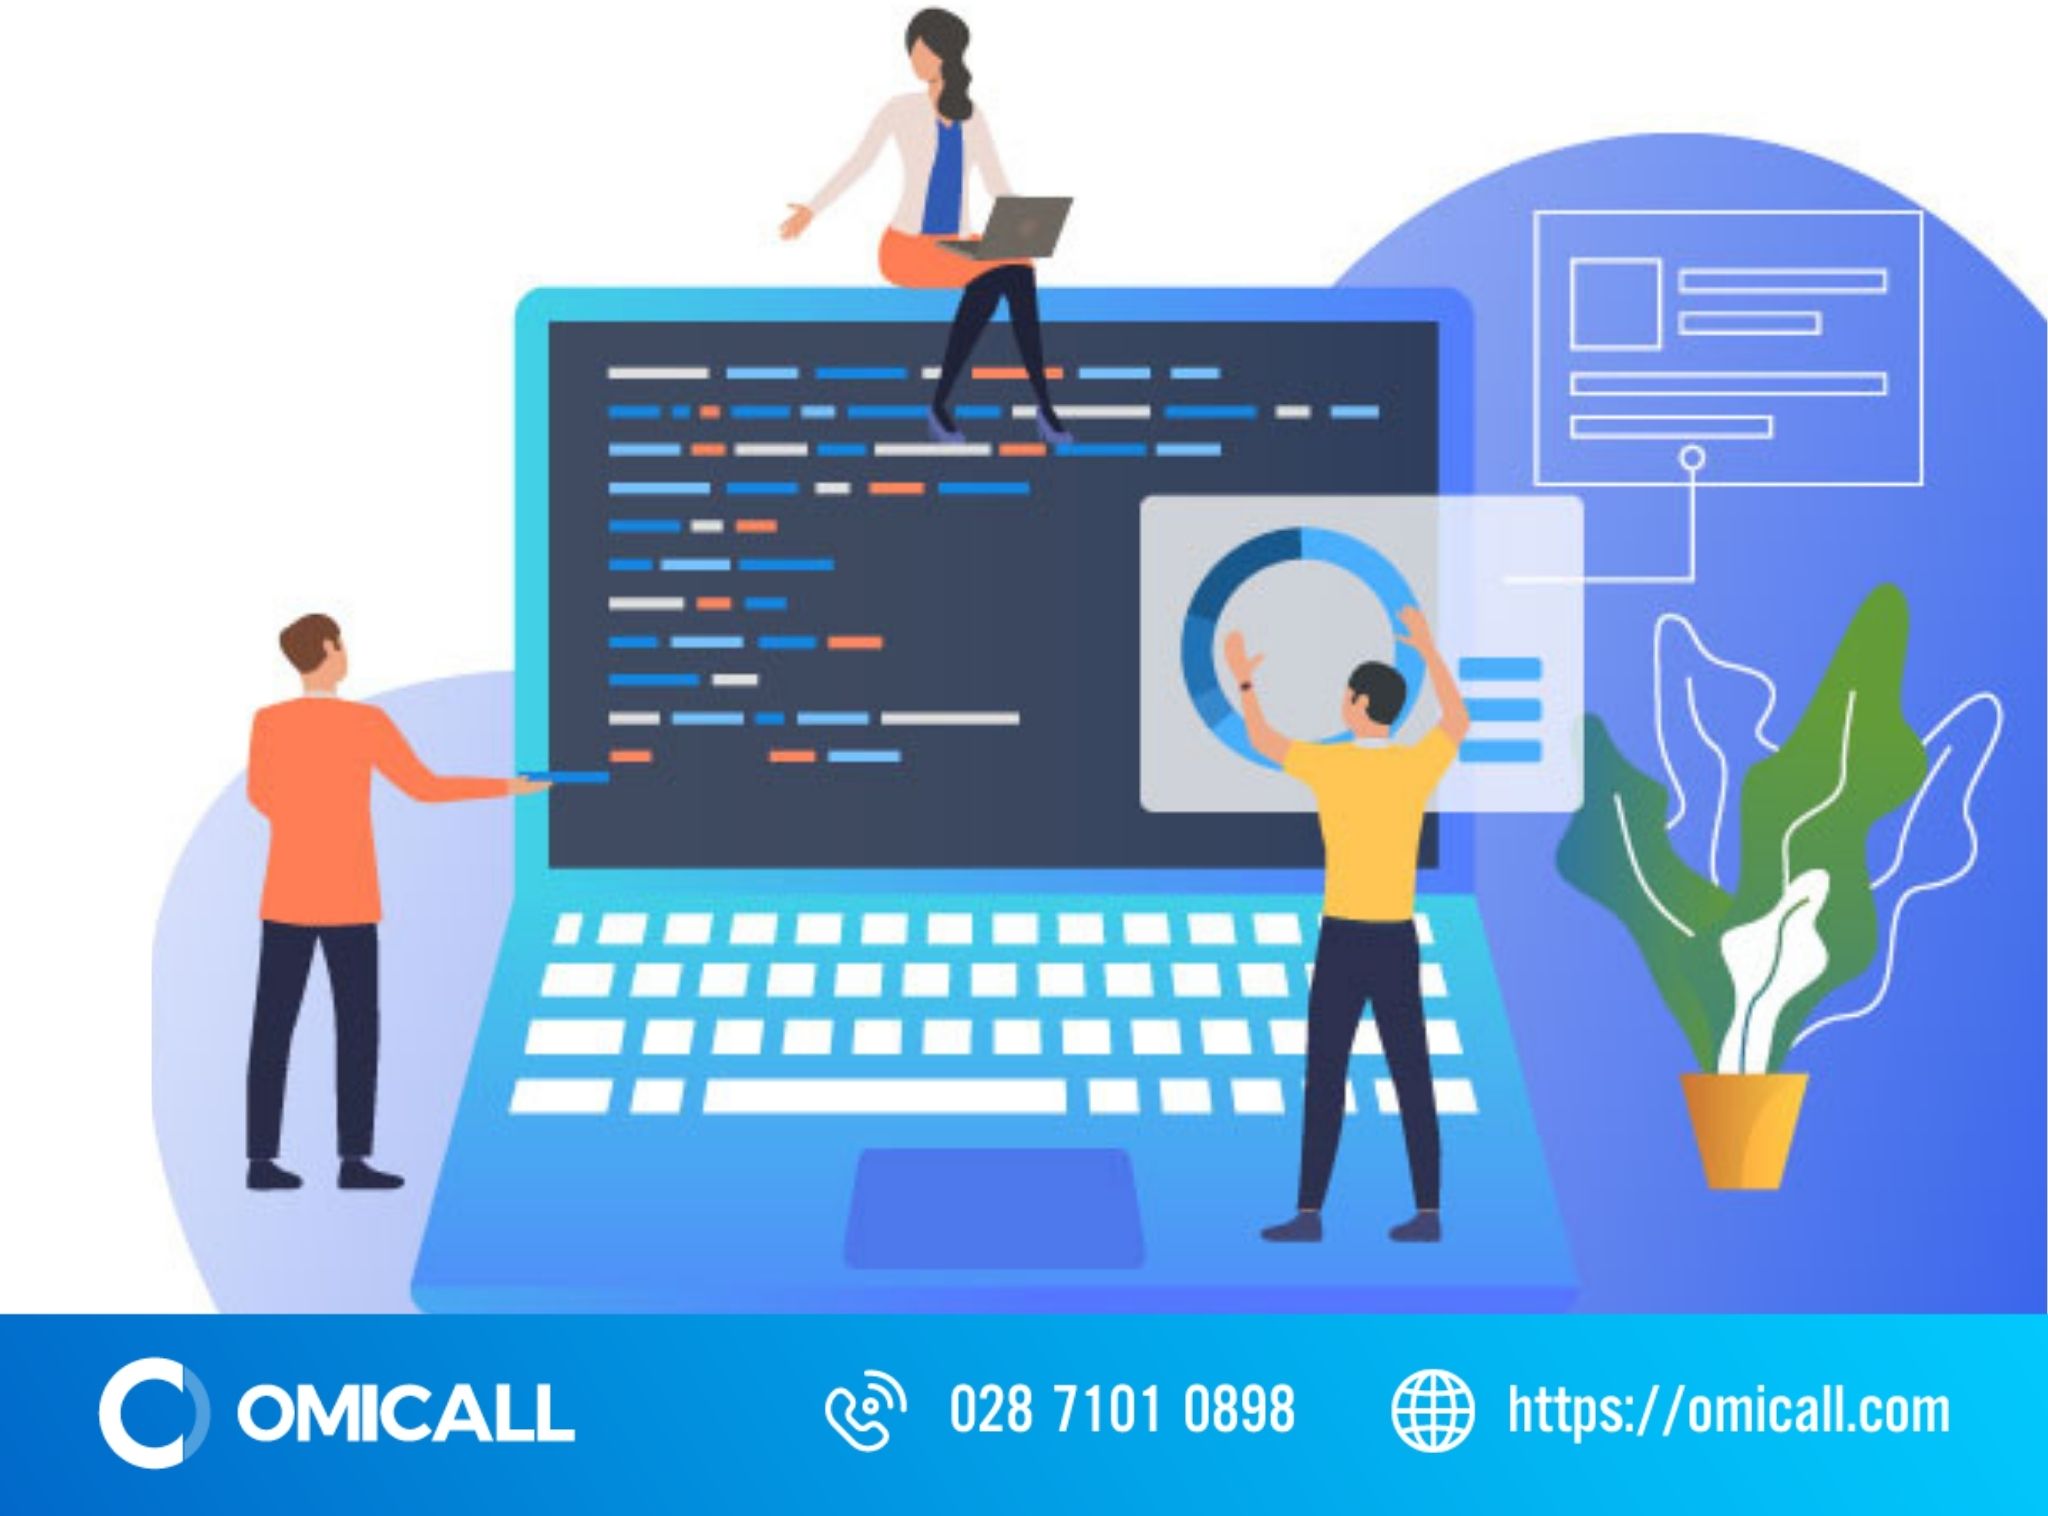 OMICall - Phần mềm quản lý telesales hiệu quả thời đại 4.0